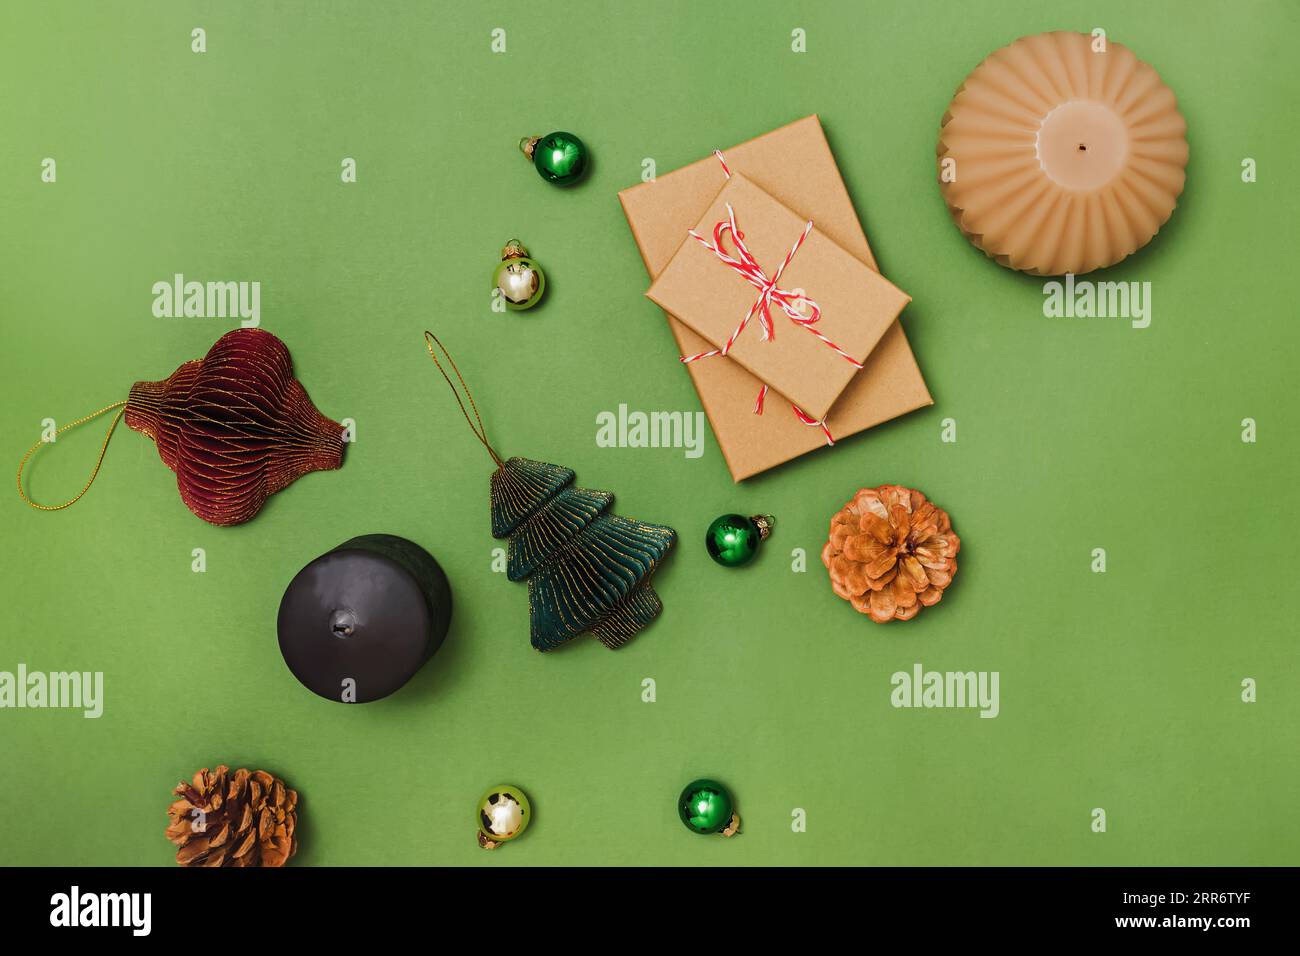 Préparer le décor et les cadeaux de Noël, composition de nature morte sur fond vert, vue de dessus Banque D'Images